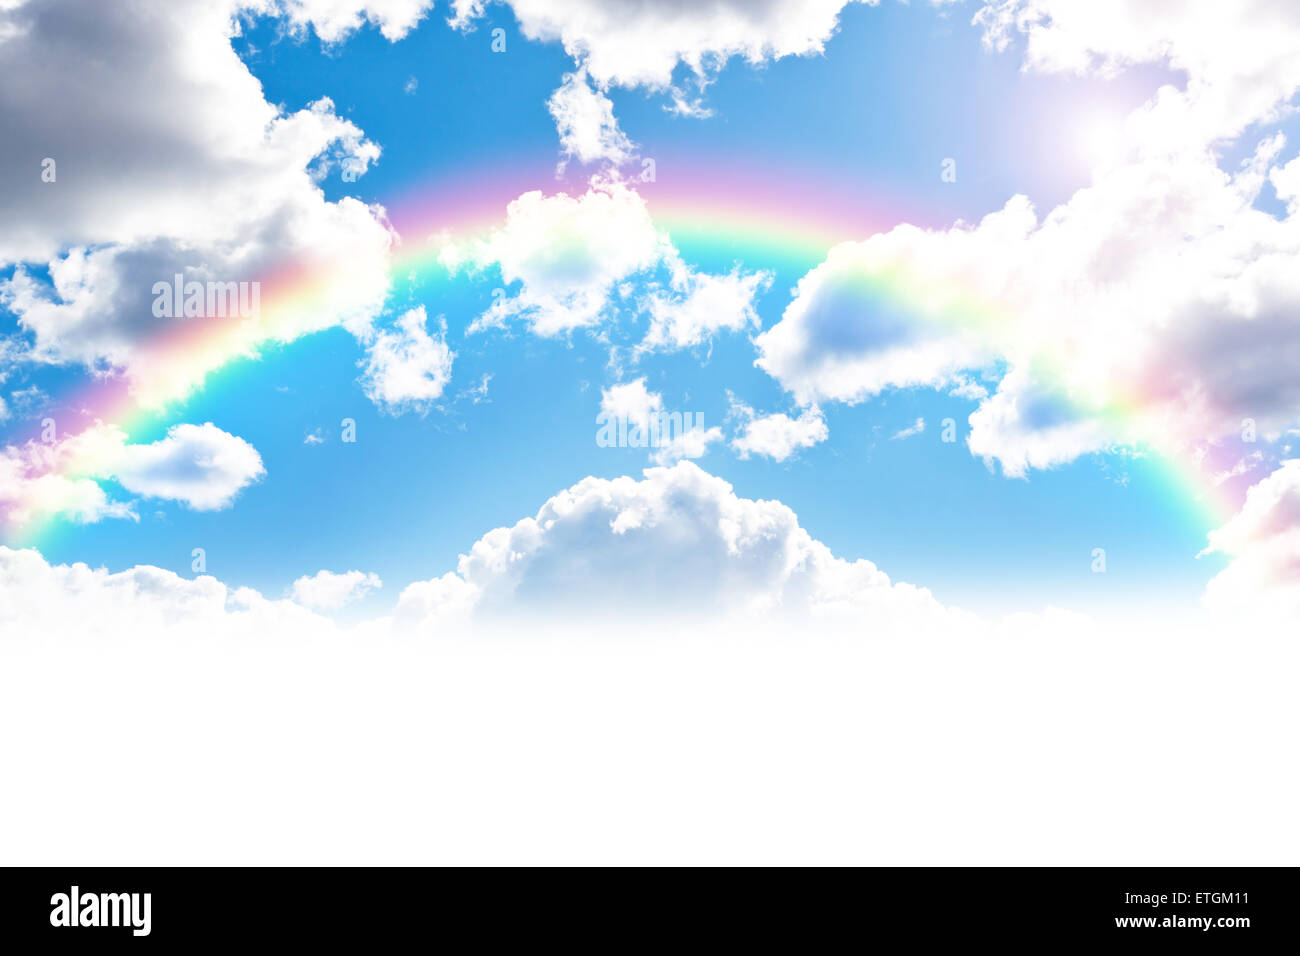 Cloudly avec fond de ciel bleu arc-en-ciel colorés Banque D'Images